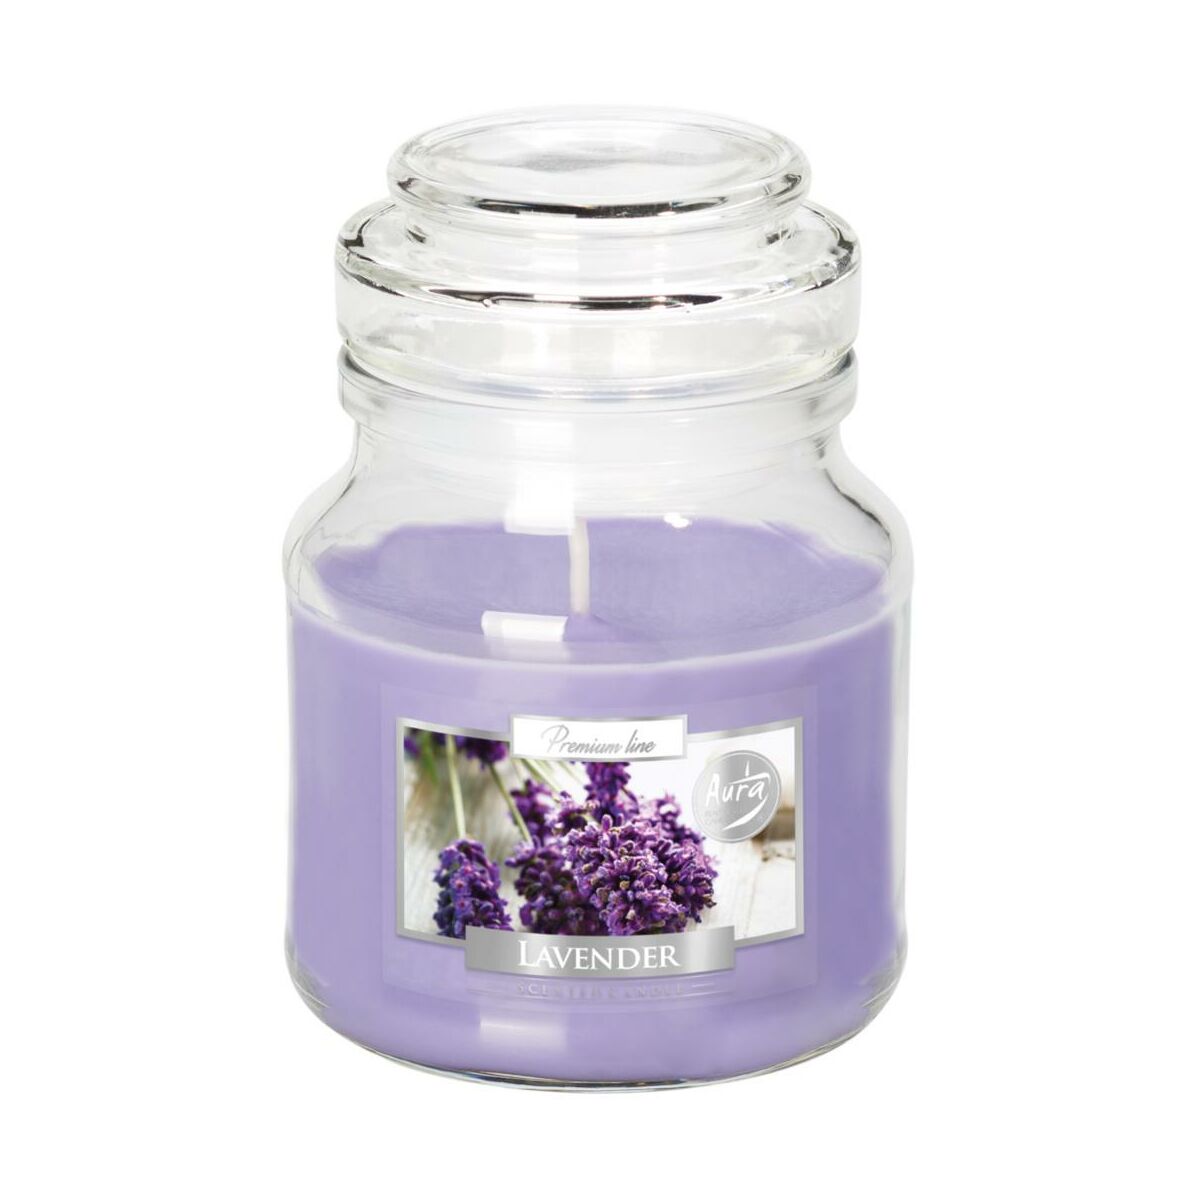 Świeca zapachowa w słoju Lavender lawenda